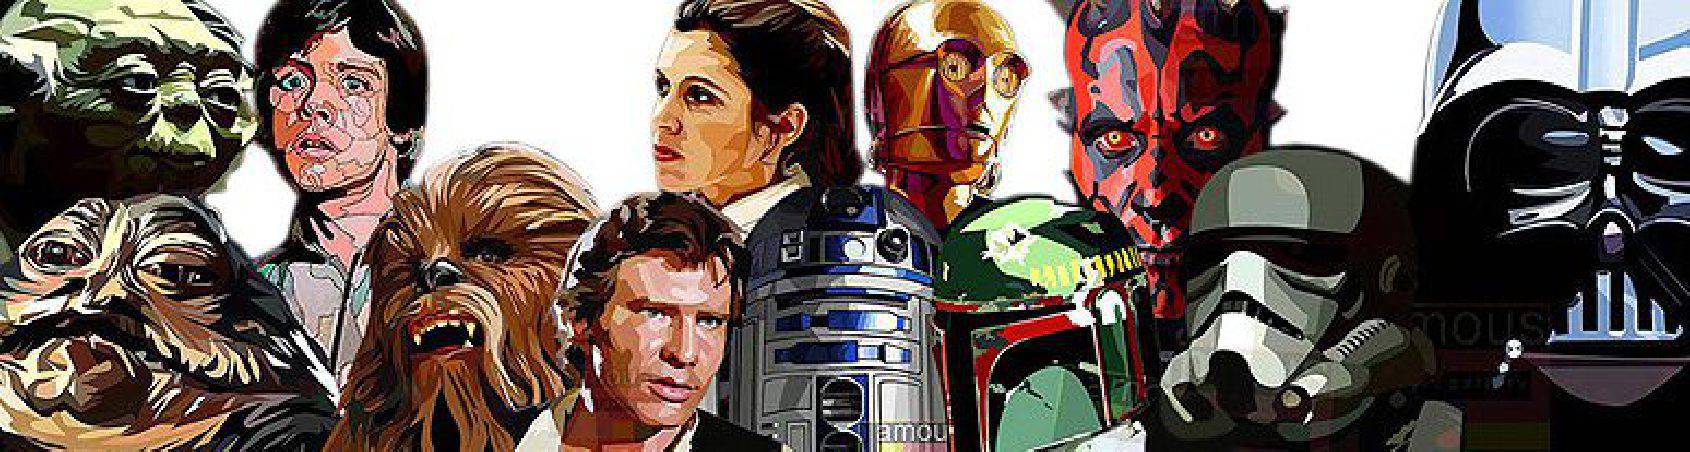 personatges Star-Wars | imatges per a decorar estil Pop-Art